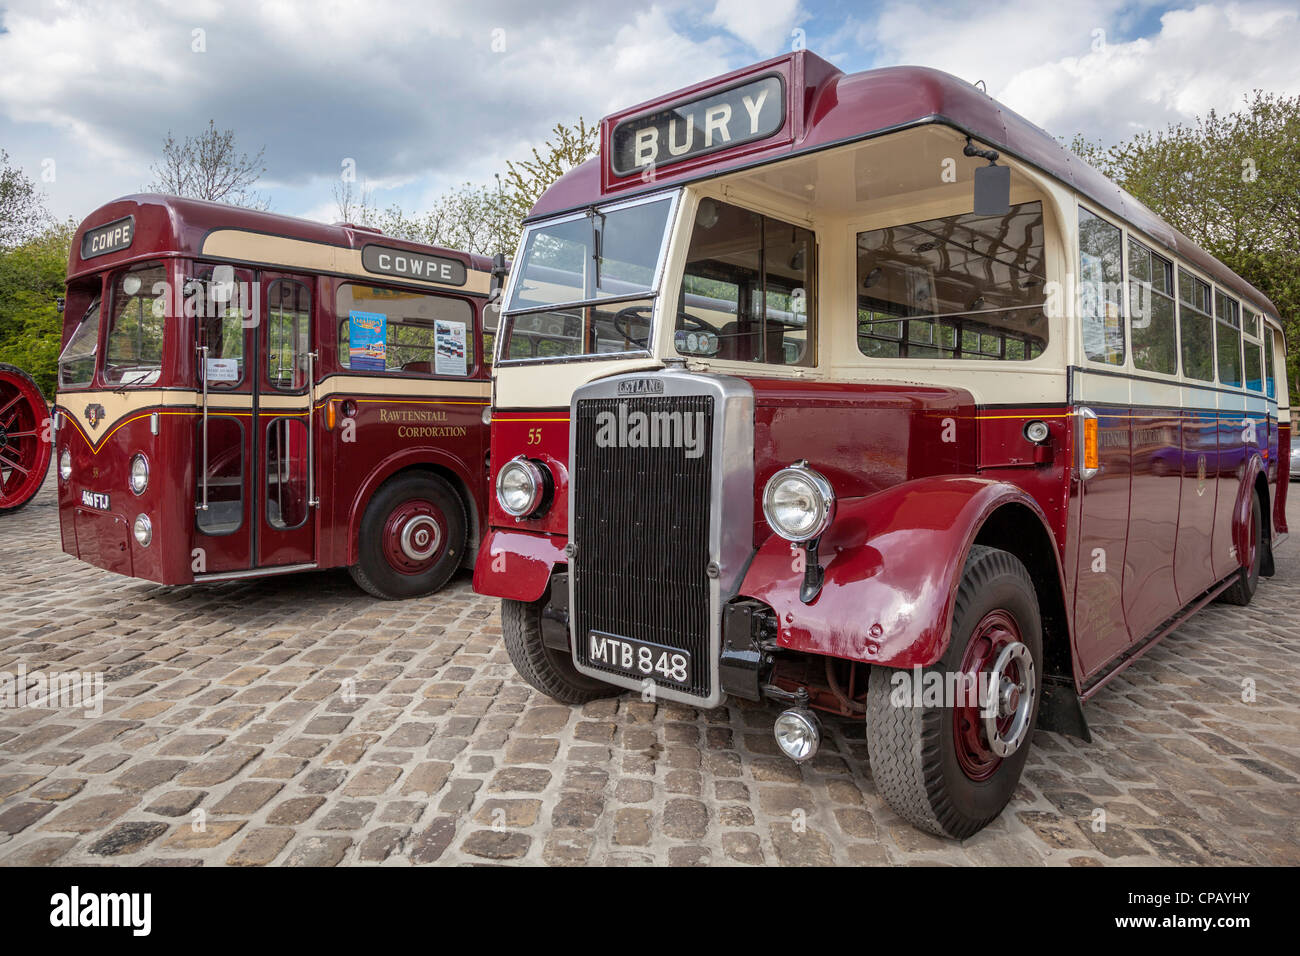 The Bury Transport Museum. Bury Lancashire. Vintage buses. Stock Photo